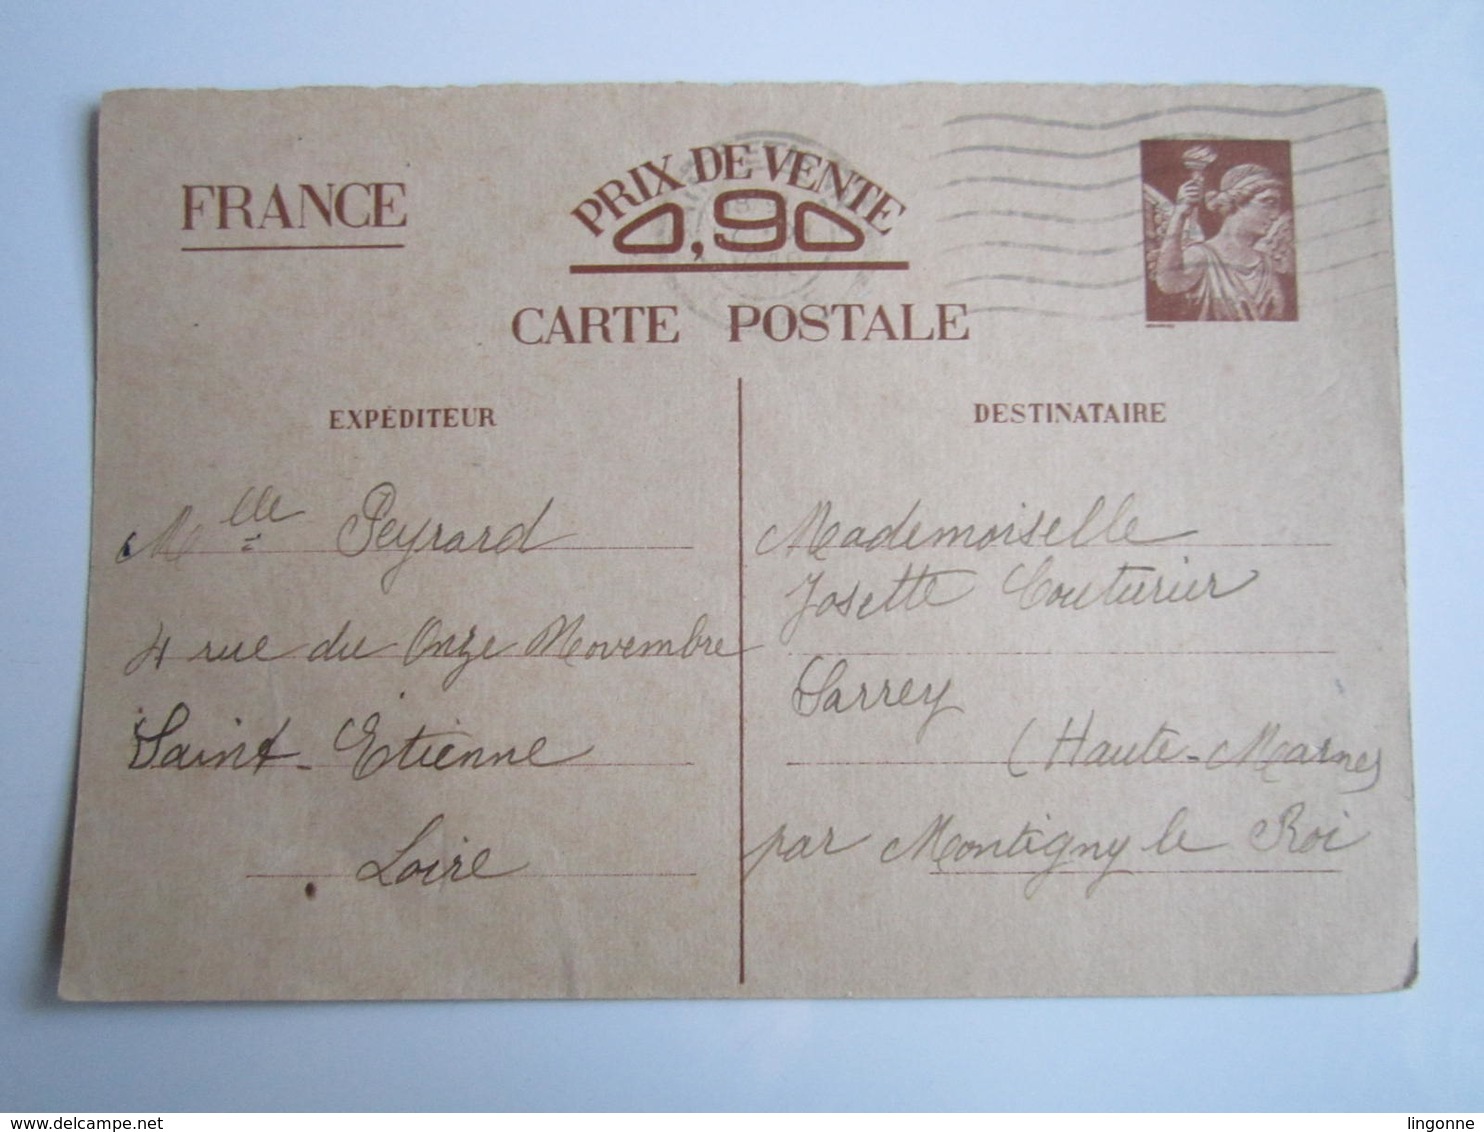 LOT de 9 Cartes postales Entier Postal Iris 90 ct 1940-41 SARREY BILLOM SAINT ETIENNE COUTURIER Oblitération Voir Photos